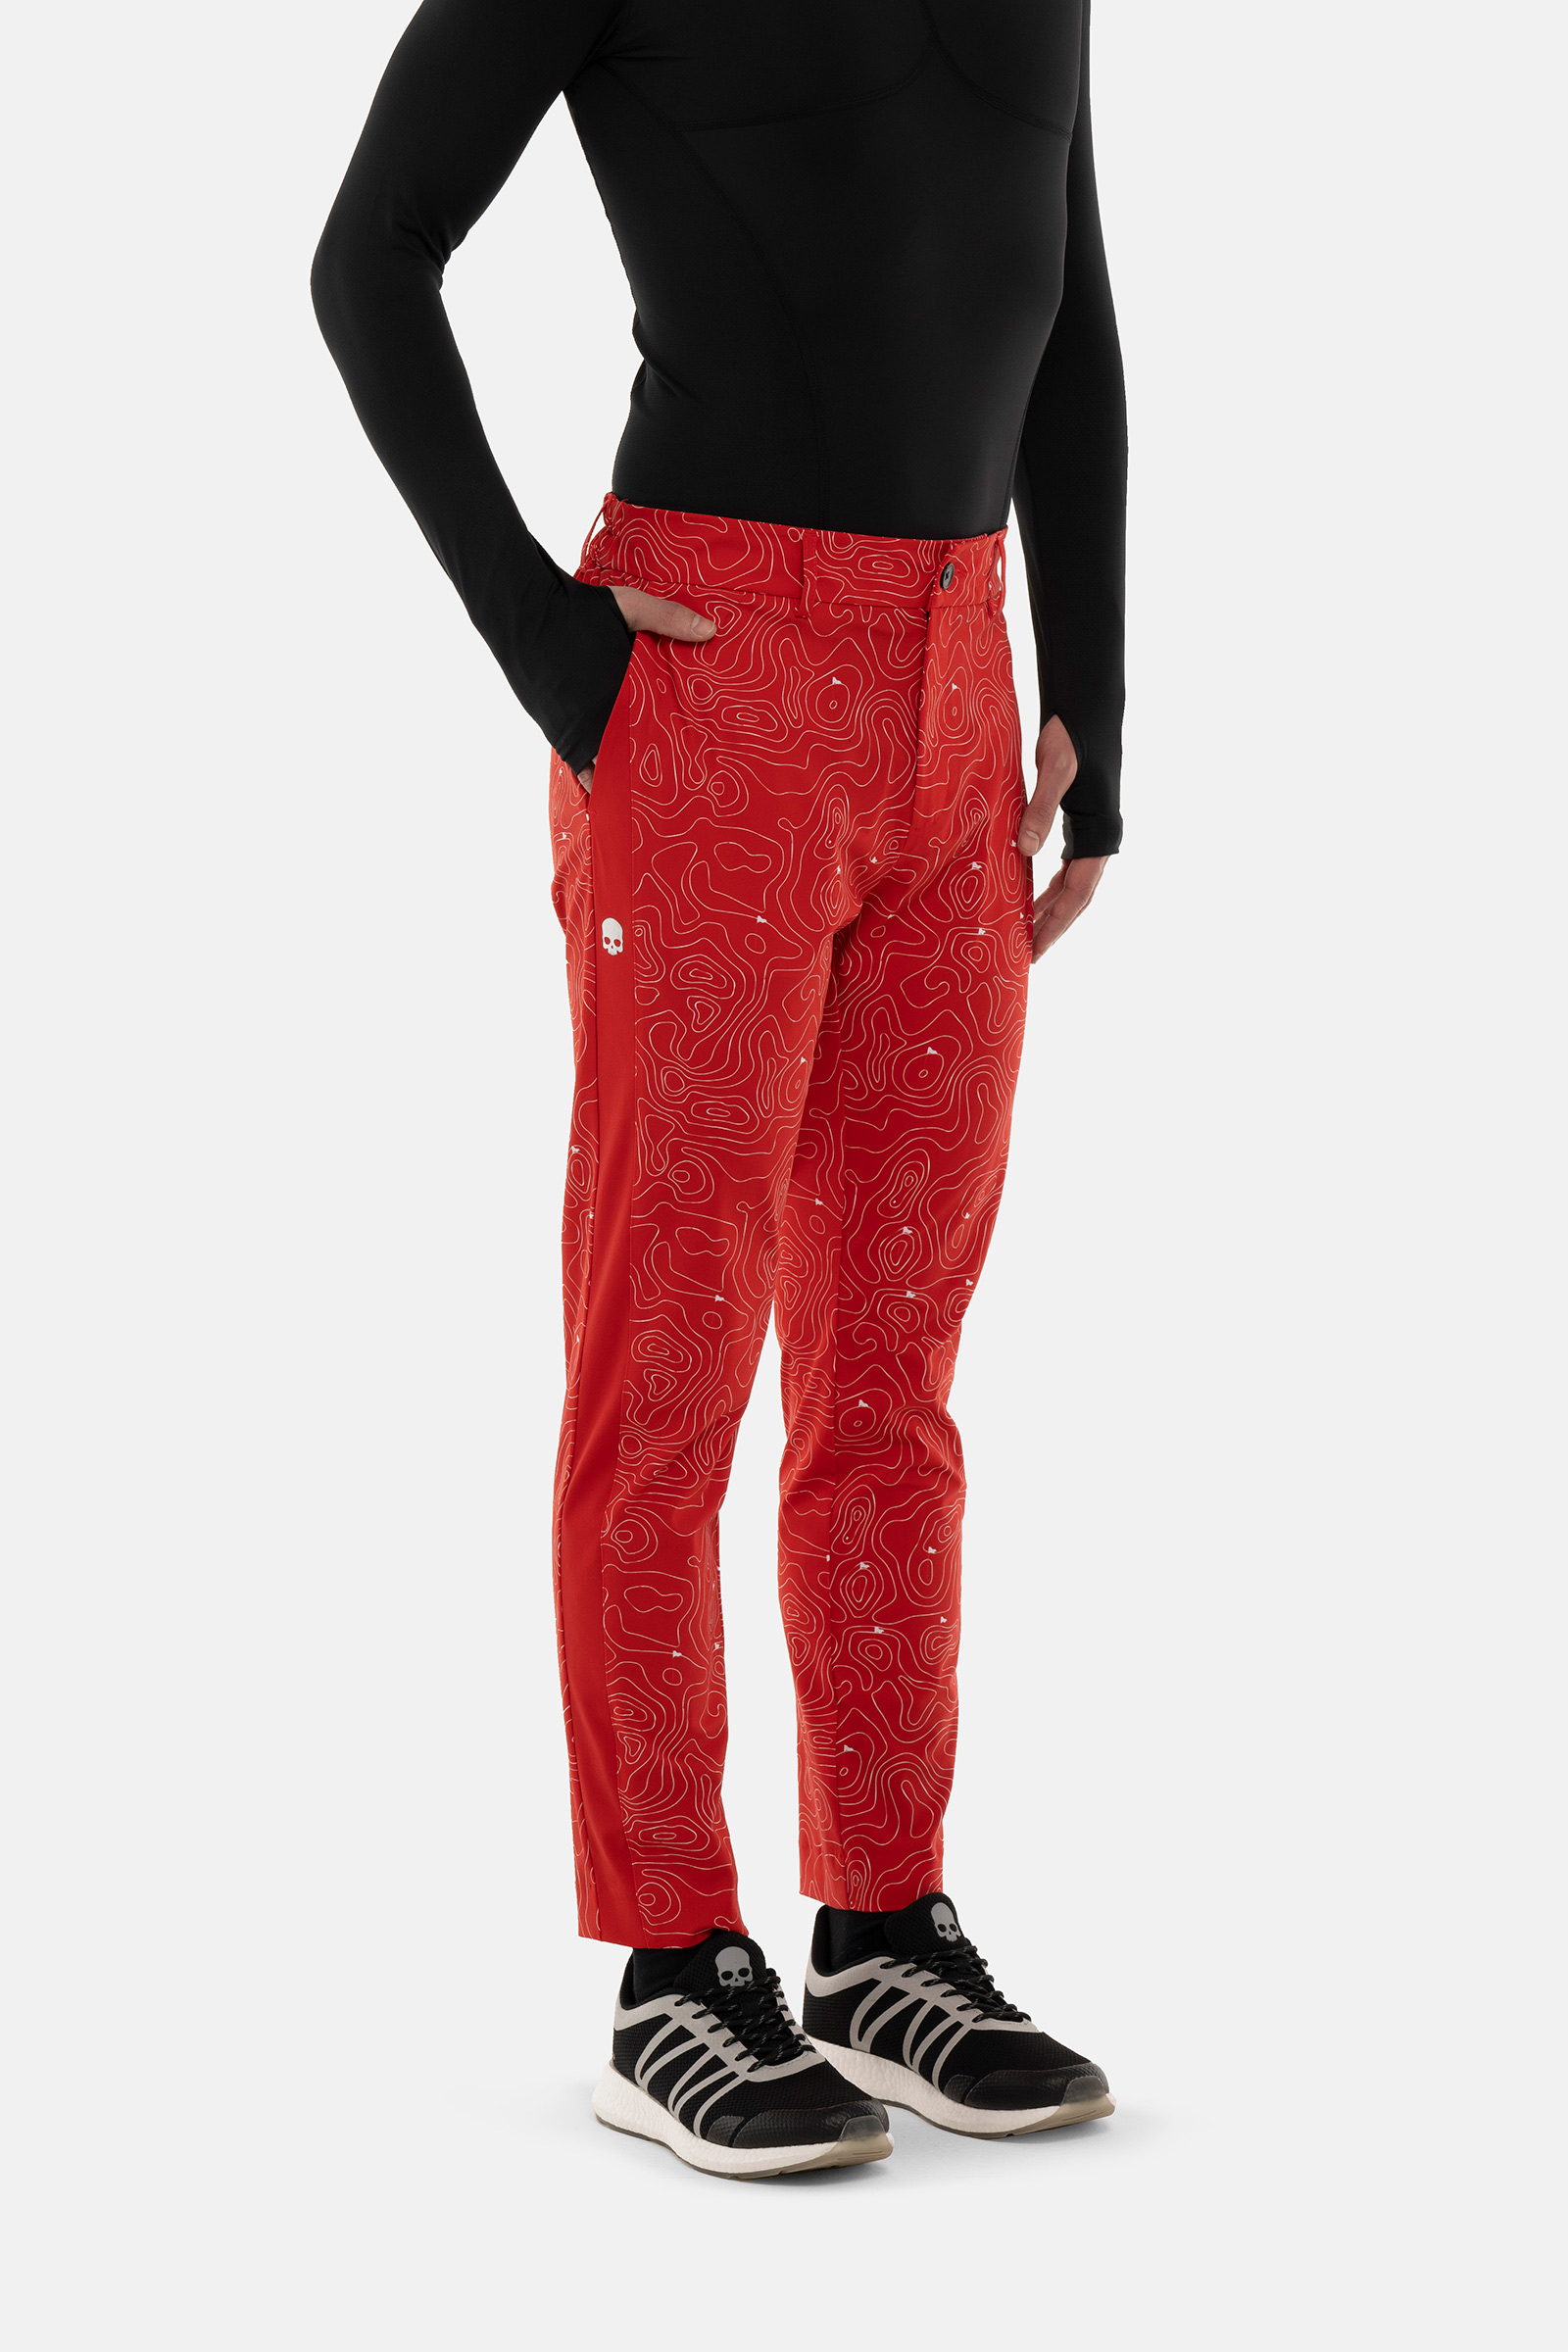 PANTALONE GOLF CON STAMPA - RED - Abbigliamento sportivo | Hydrogen